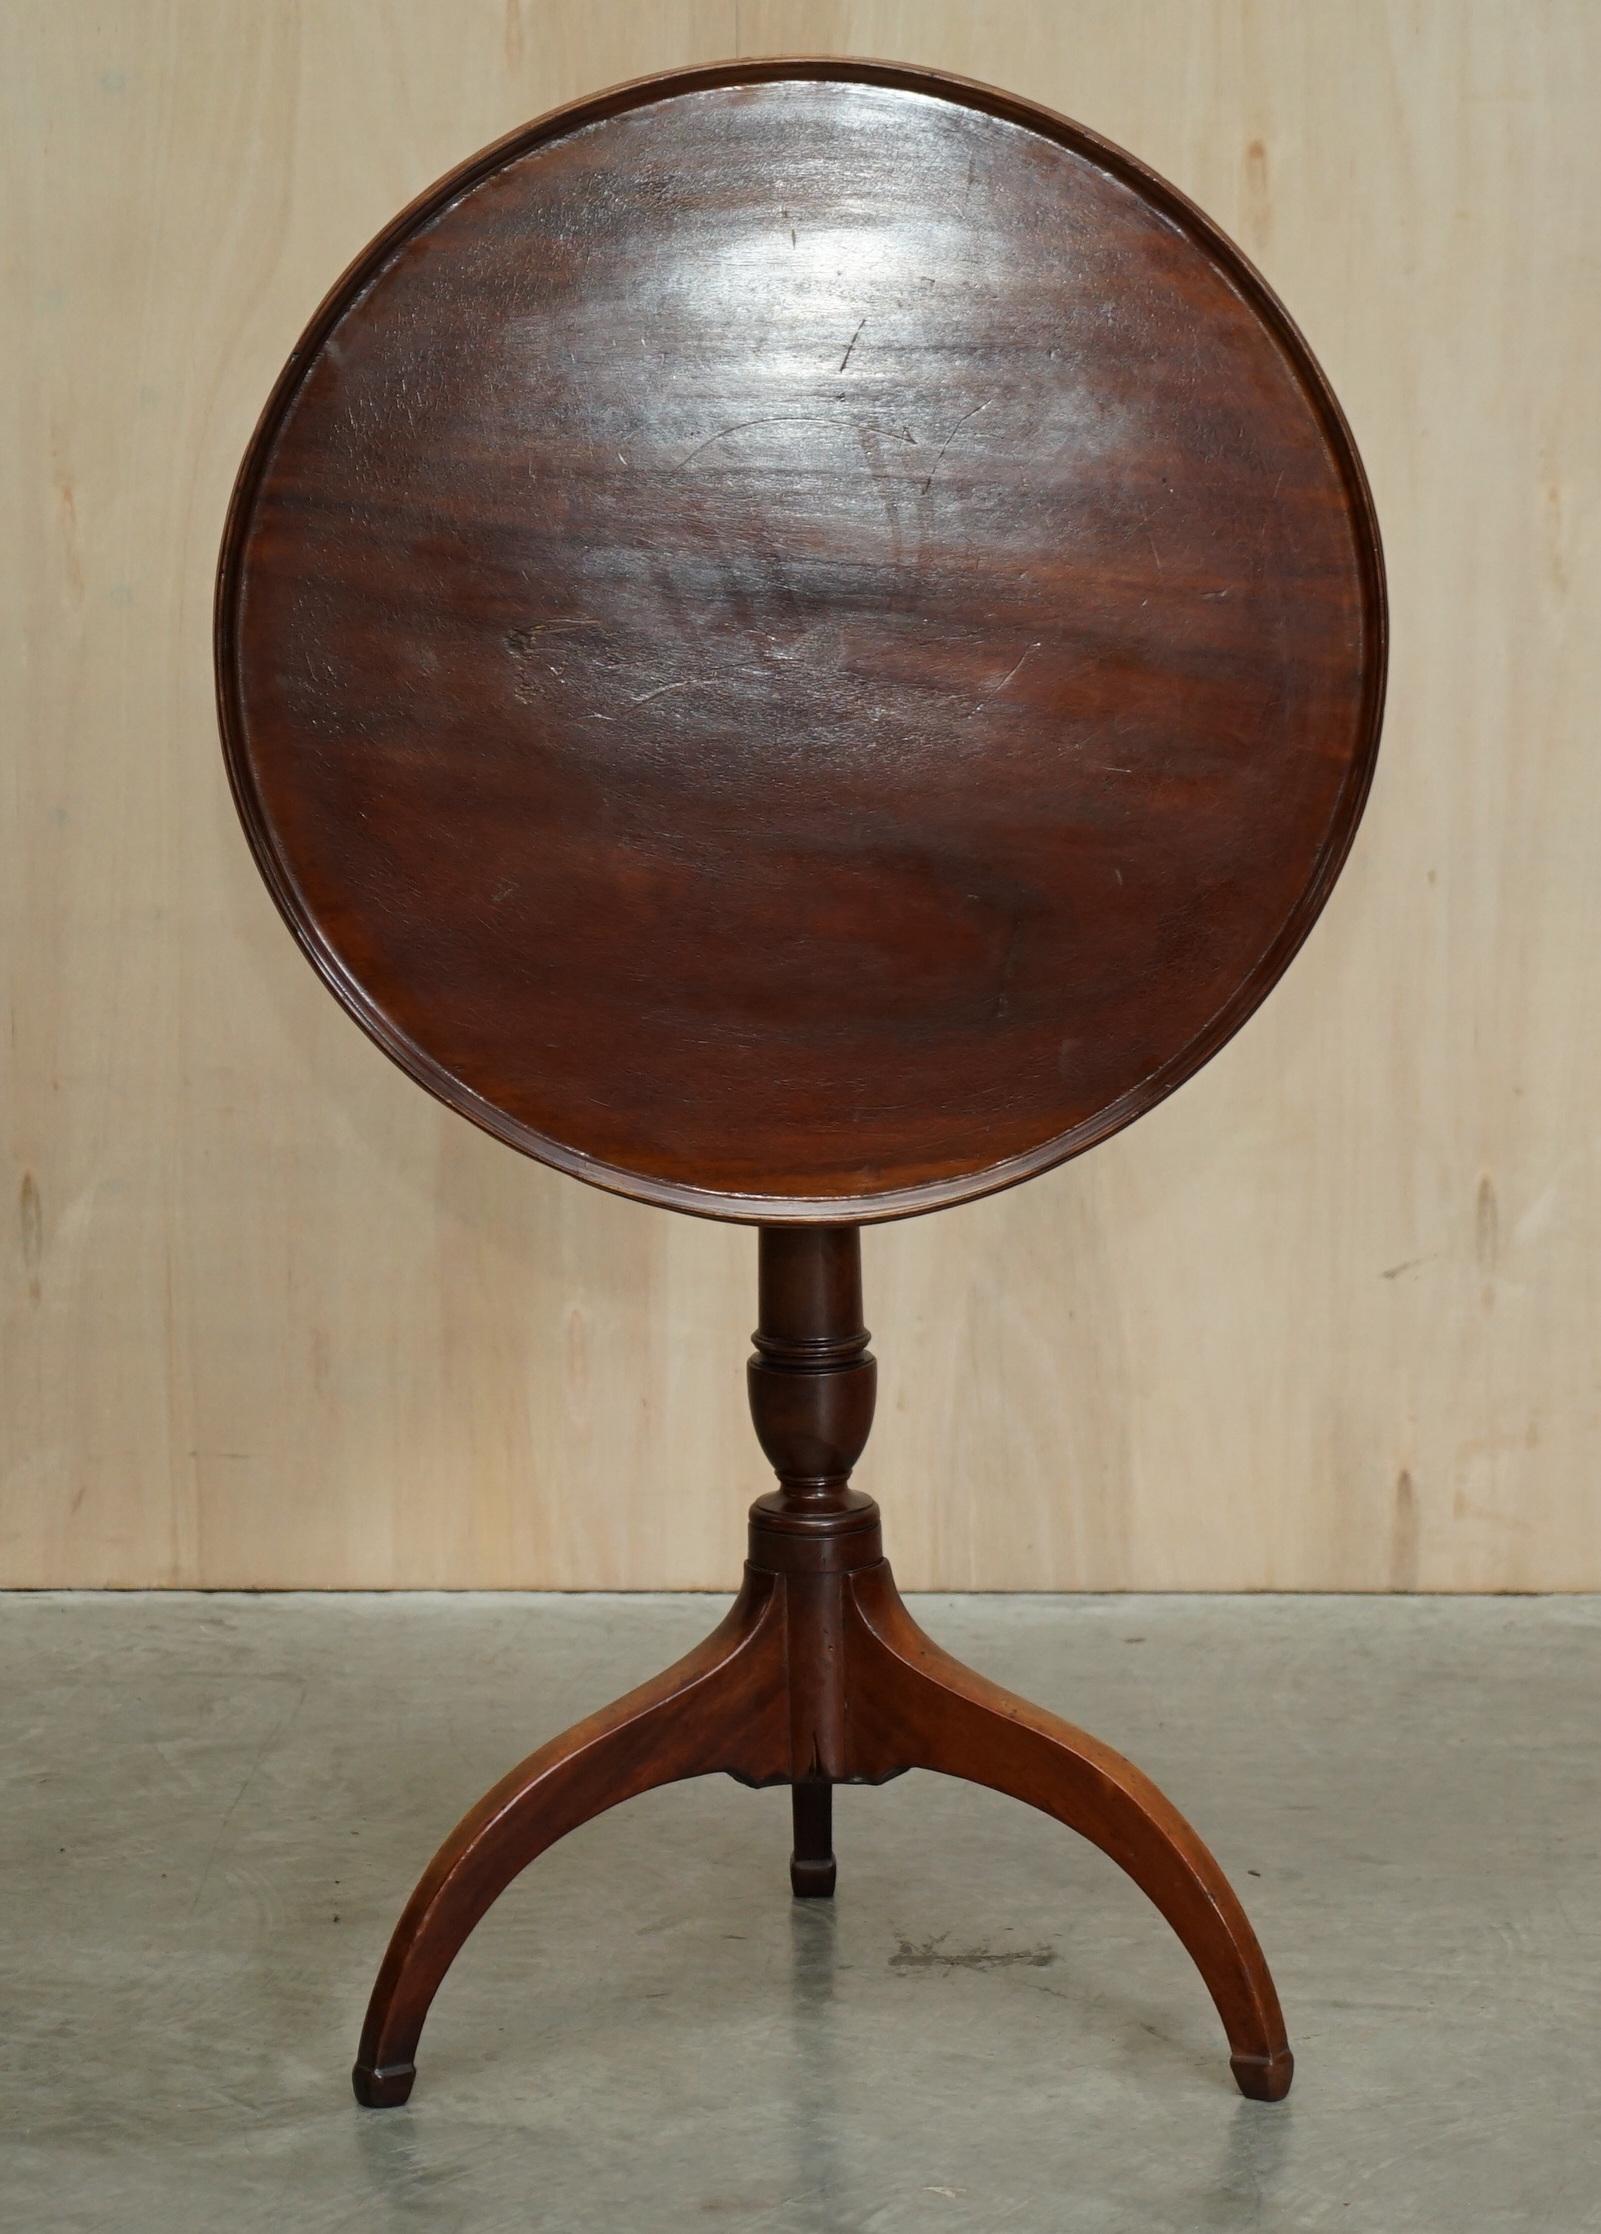 Wir freuen uns, diesen schönen georgianischen Mahagoni-Tisch mit Kippplatte und kanneliertem Säulenfuß aus der Zeit um 1780 zum Verkauf anzubieten

Ein wunderbar dekorativer und sehr origineller georgianischer Beistelltisch. Dieses Stück ist ein